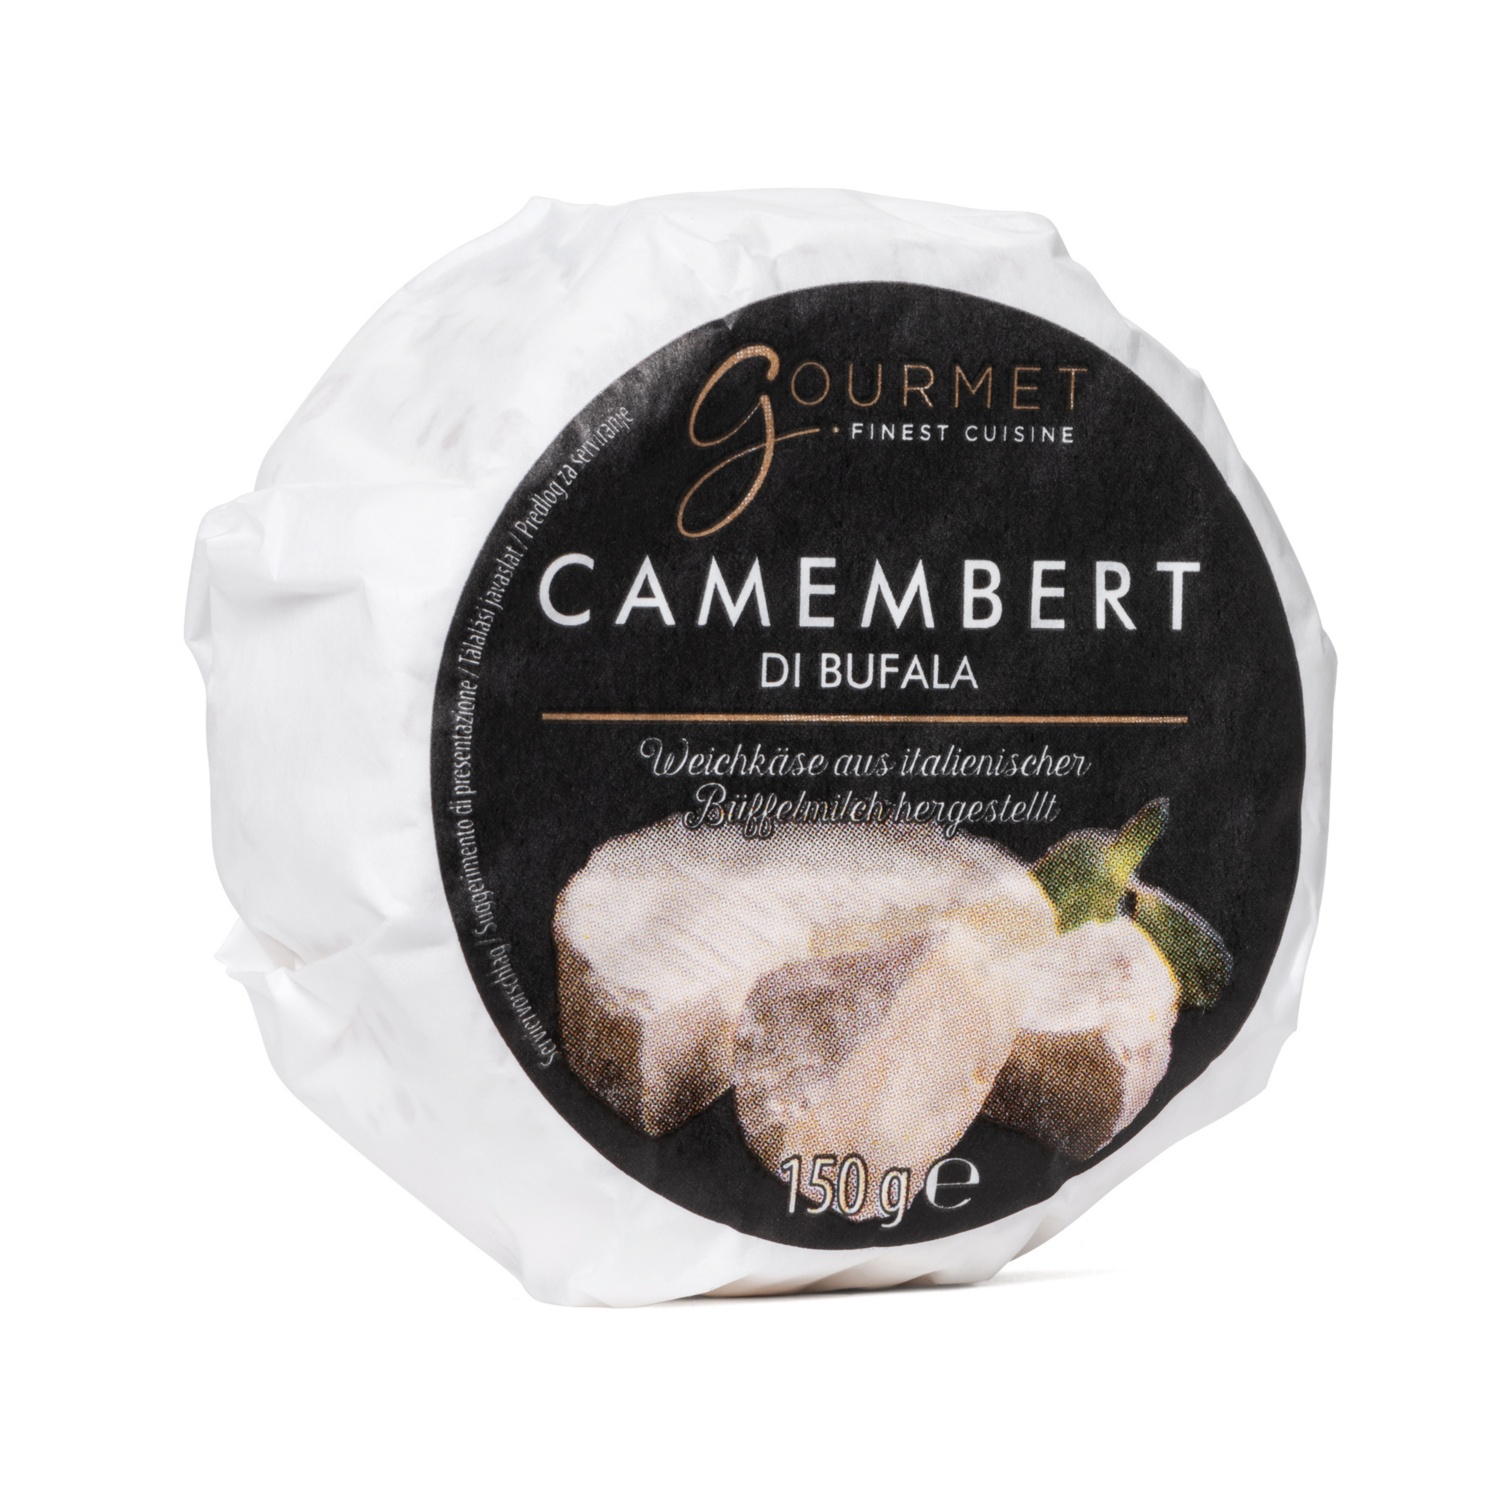 GOURMET Camembert di bufala